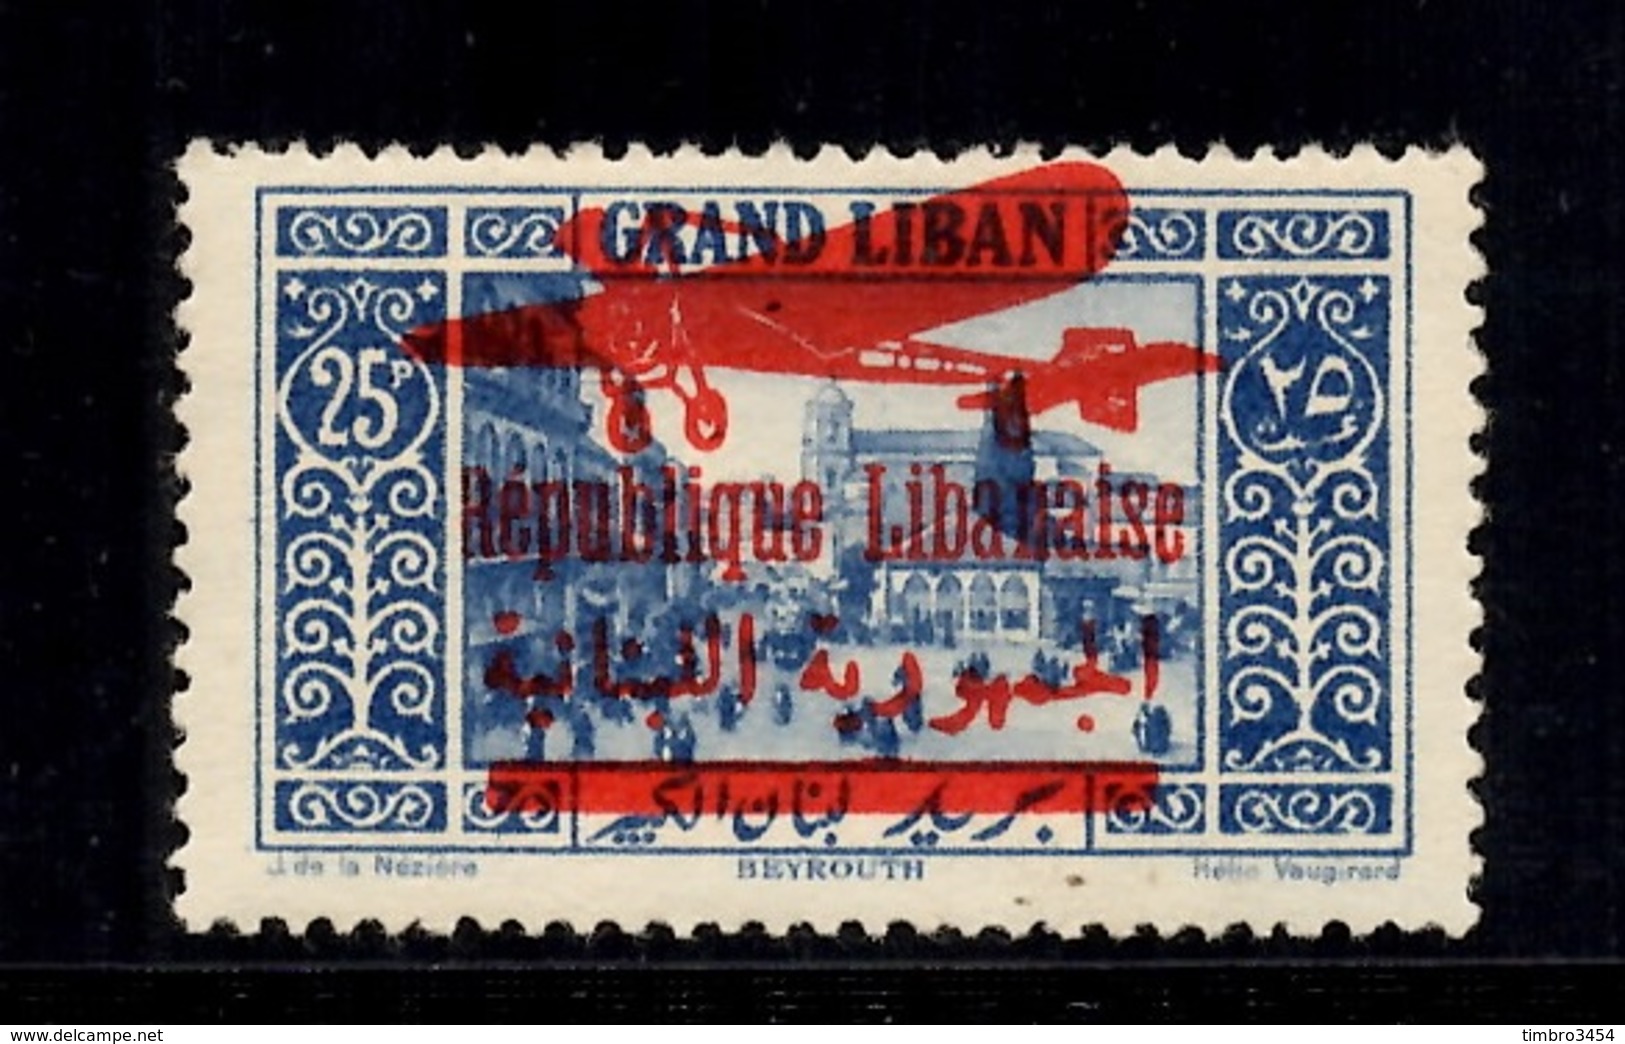 Grand Liban Poste Aérienne Maury N° 37 Neuf *. Signé Brun. B/TB. A Saisir! - Poste Aérienne